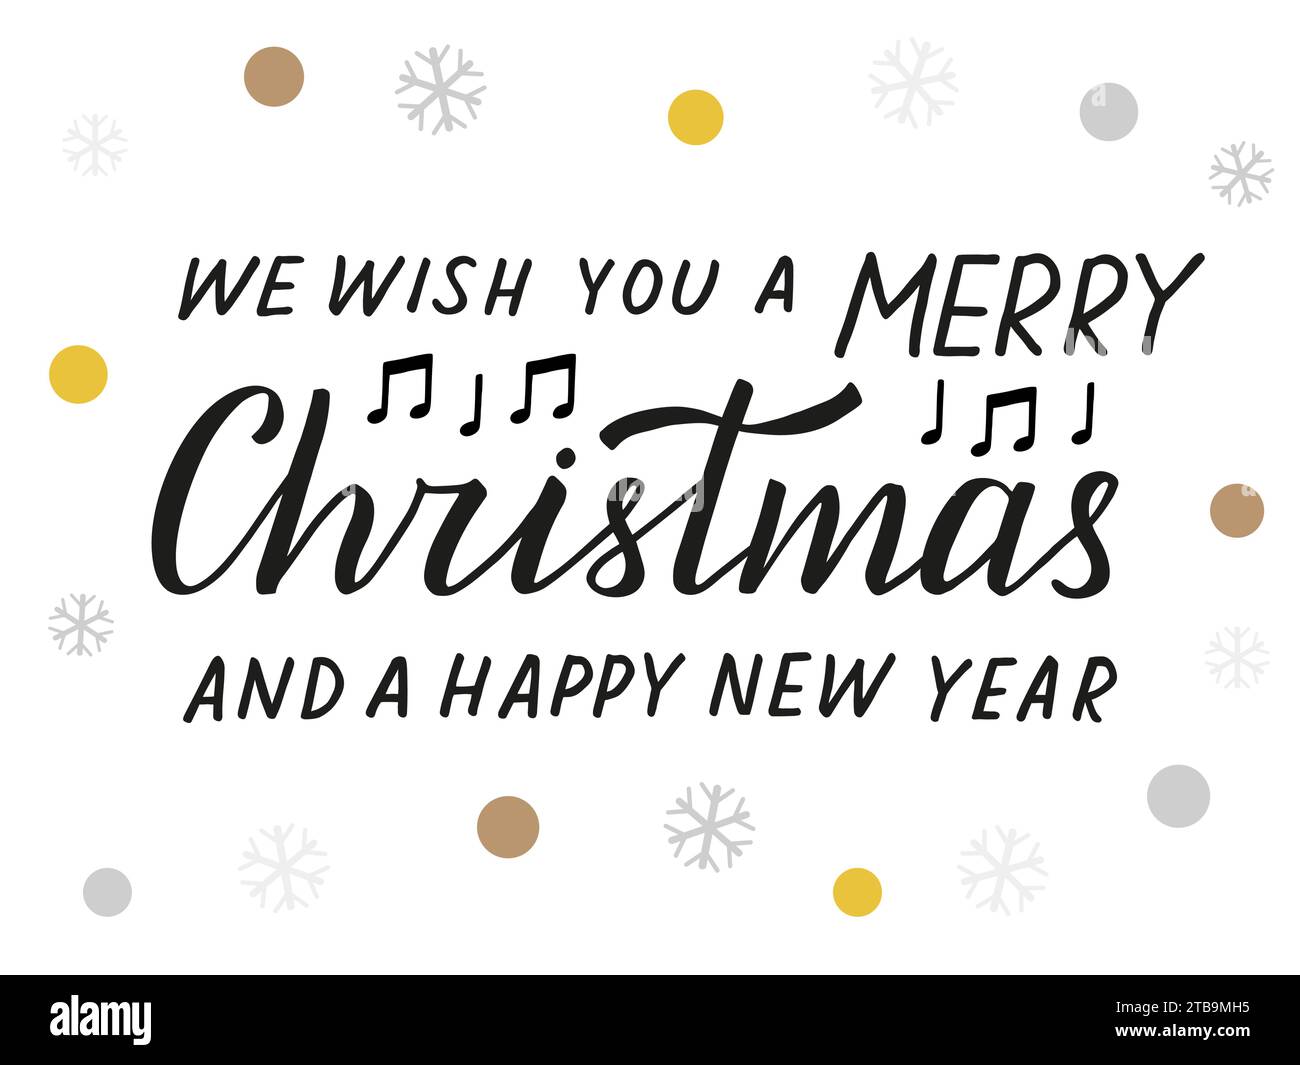 Wir wünschen Ihnen frohe Weihnachten und ein frohes neues Jahr. Songtext. Handgeschriebene Schrift. Schwarzer Text isoliert auf weißen, farbigen Schneeflocken und Kreisen. Stock Vektor